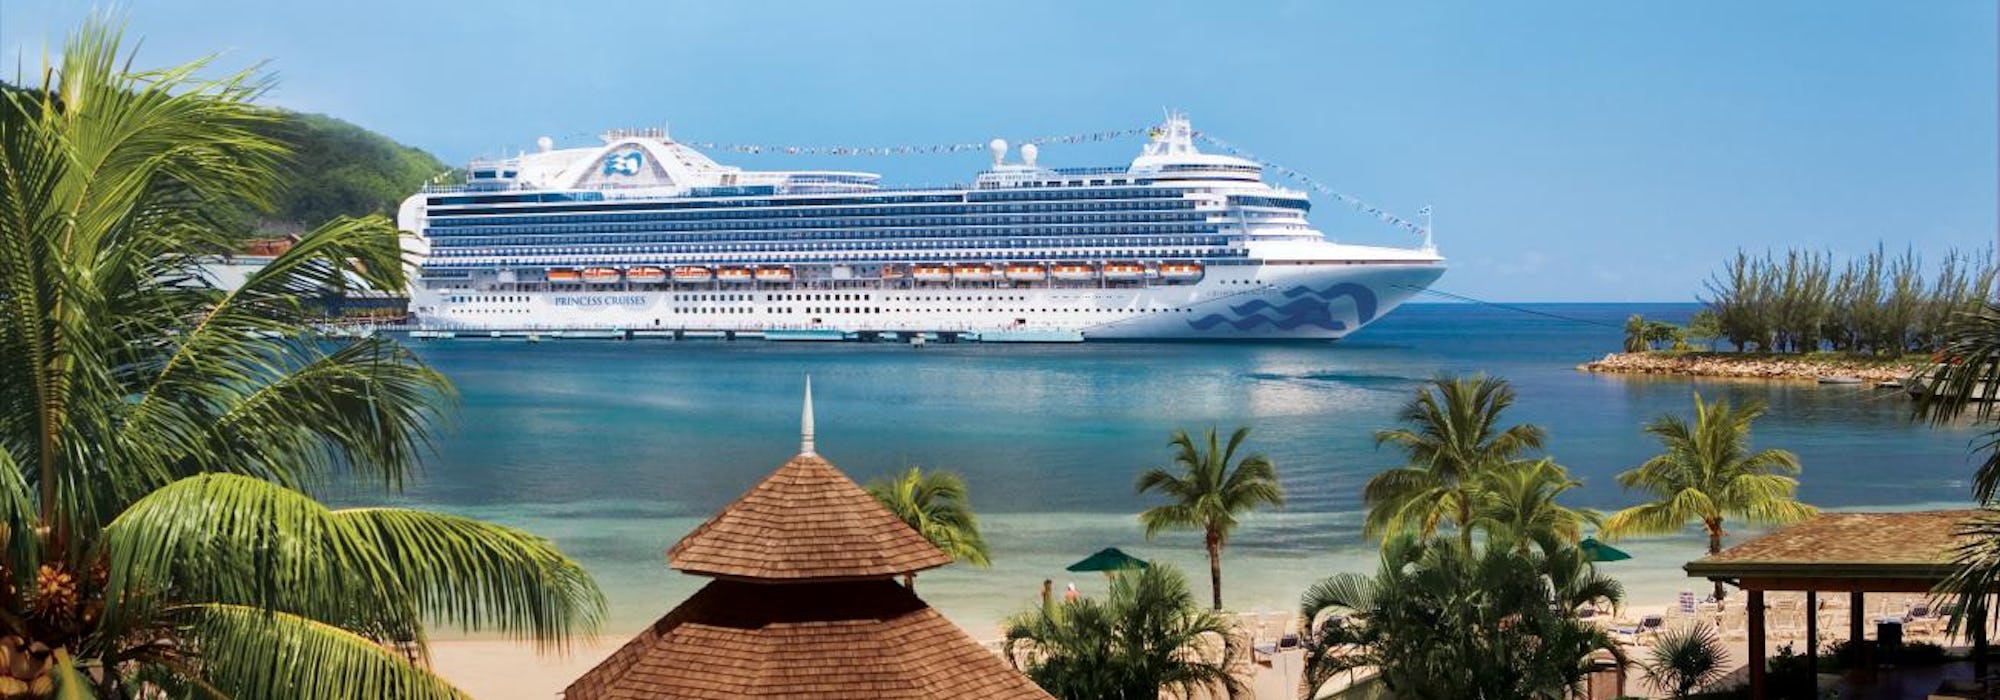 Fartyget Crown Princess ligger ankrad utanför en hamn i exotiska Jamaica. I framkant syns palmer och vit sand.